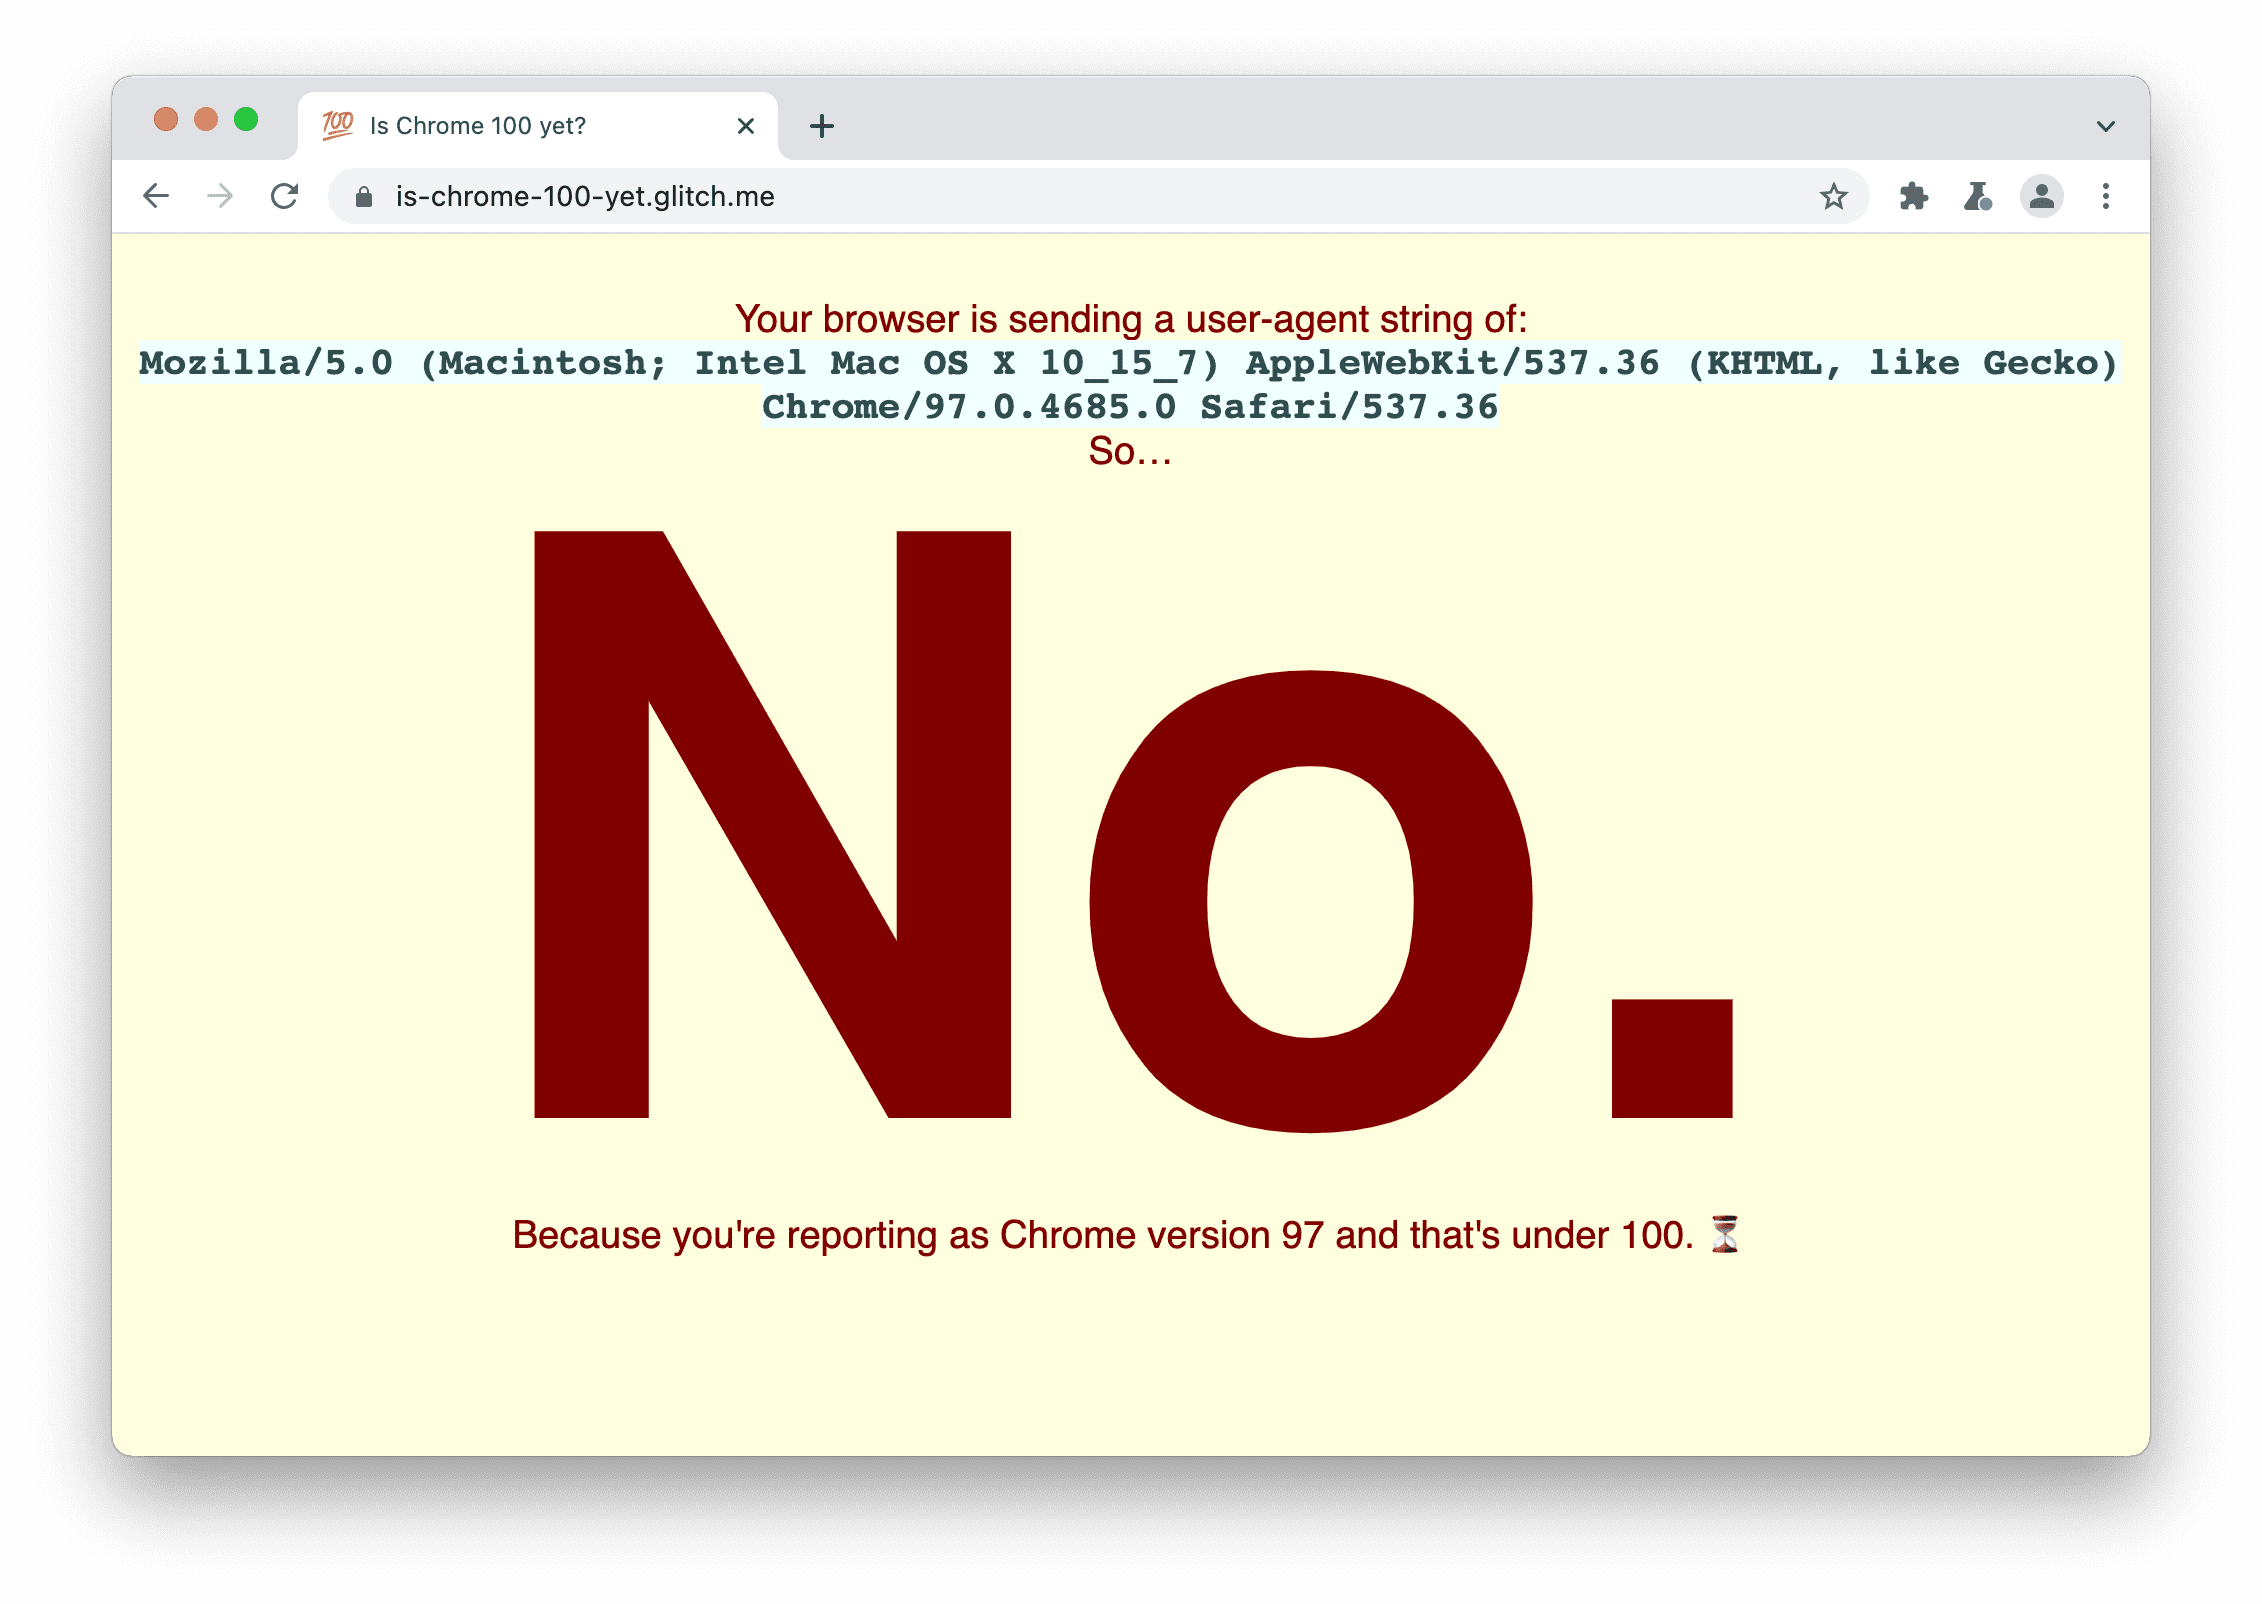 Situs yang memeriksa apakah browser mengirimkan string Agen Pengguna 100. Pesannya ditampilkan: Tidak, karena Anda melaporkan Chrome versi 97 dan itu kurang dari 100.